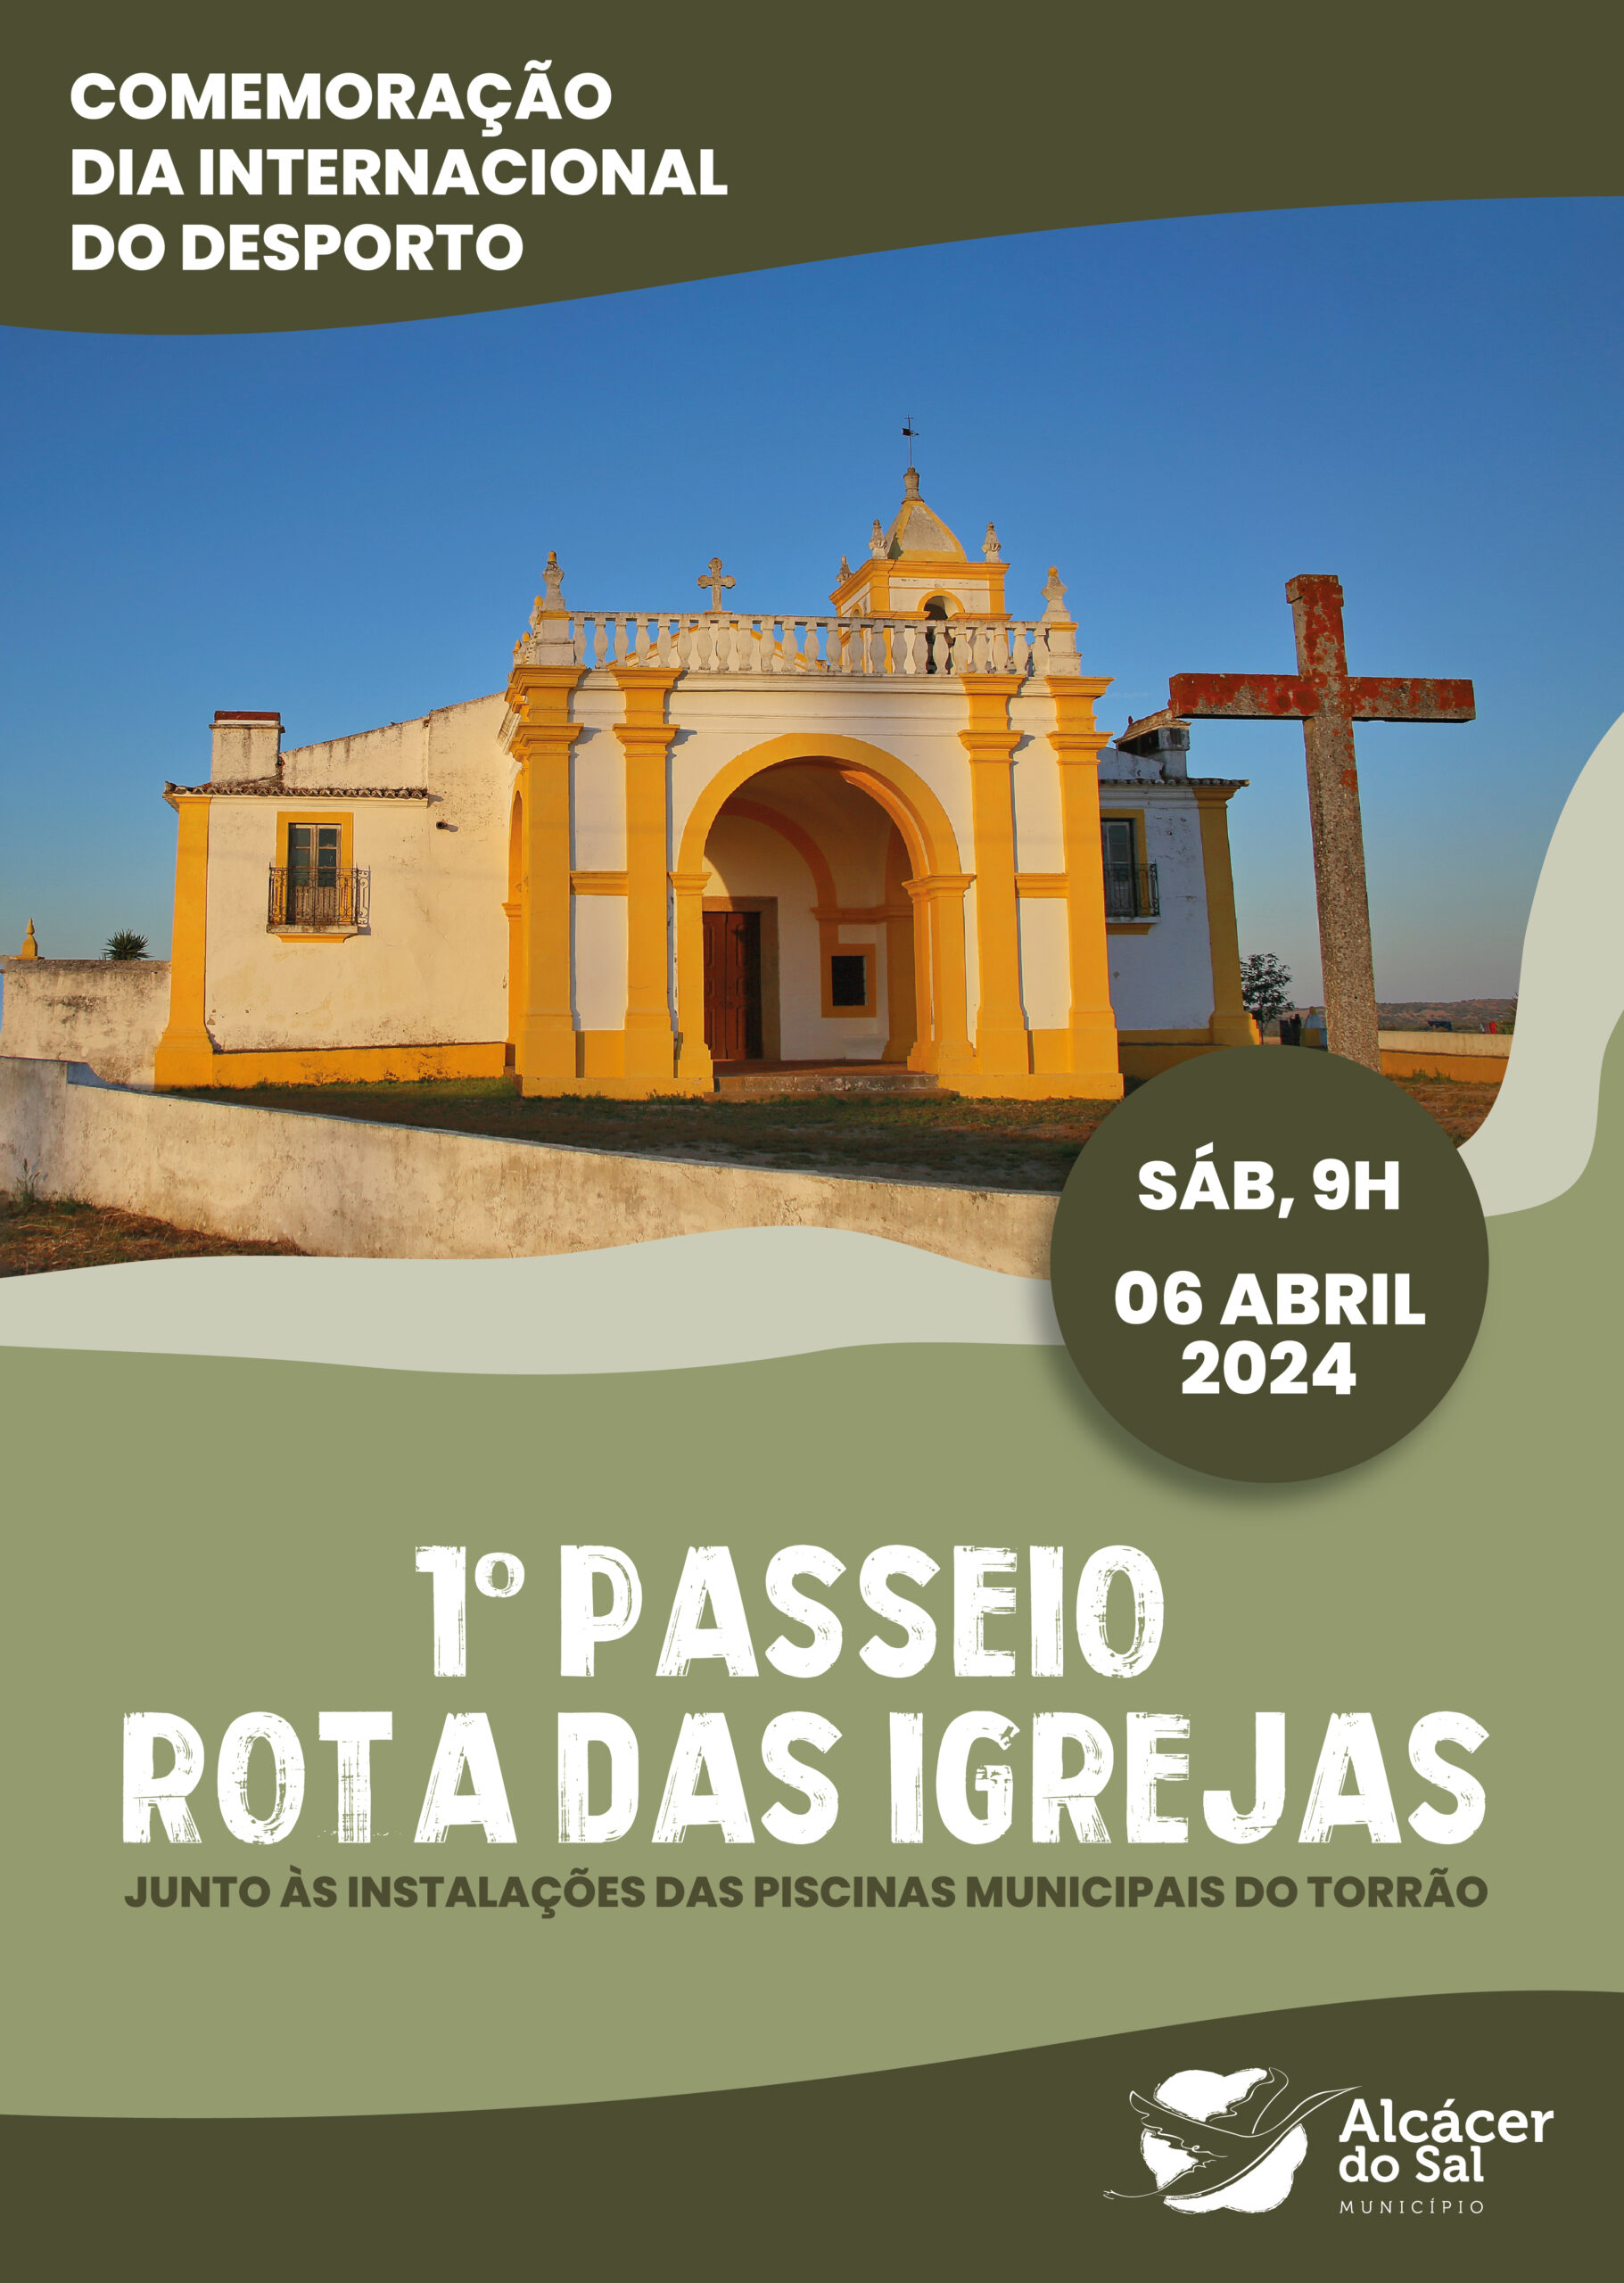 Imagem mural_Rota das igrejas, Torrão